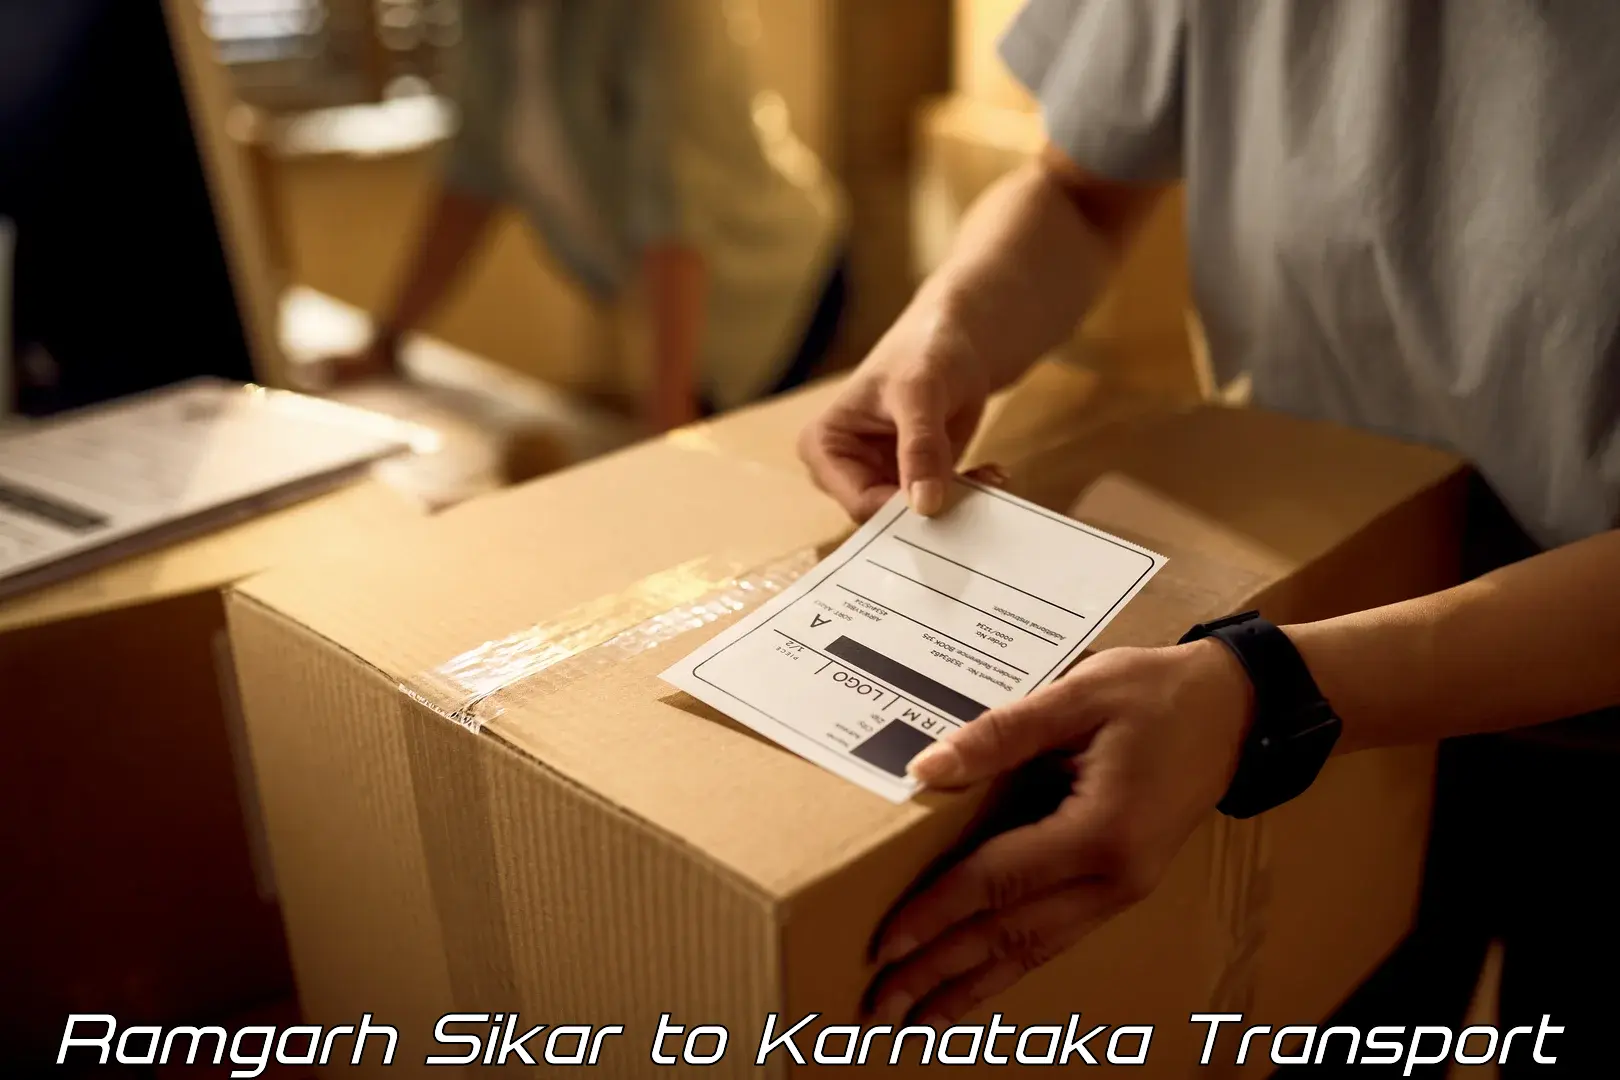 Online transport booking Ramgarh Sikar to Kolar